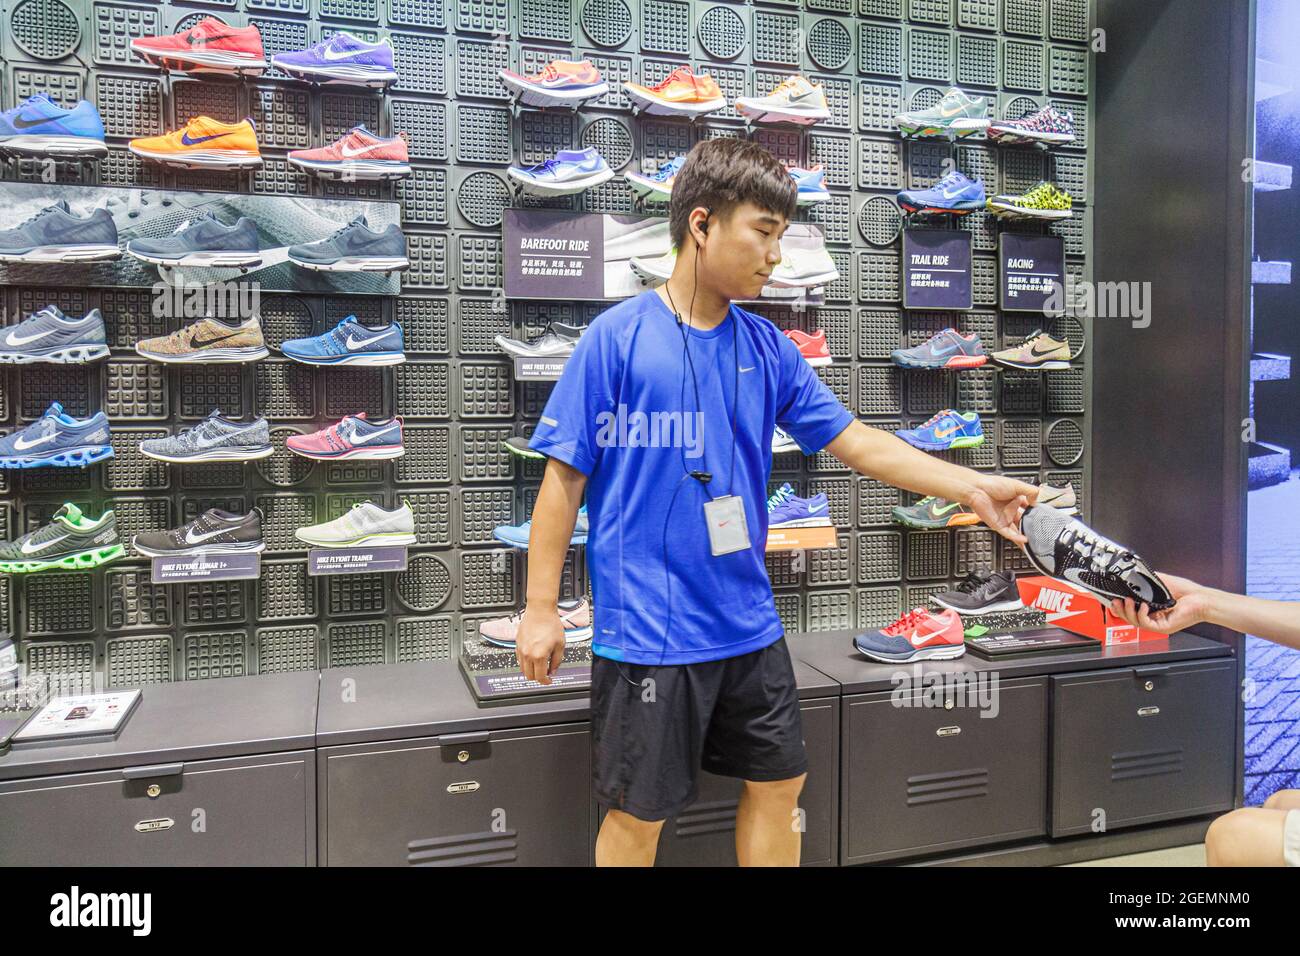 Tienda de compras negocio tienda nike calzado deportivo fotografías e  imágenes de alta resolución - Alamy